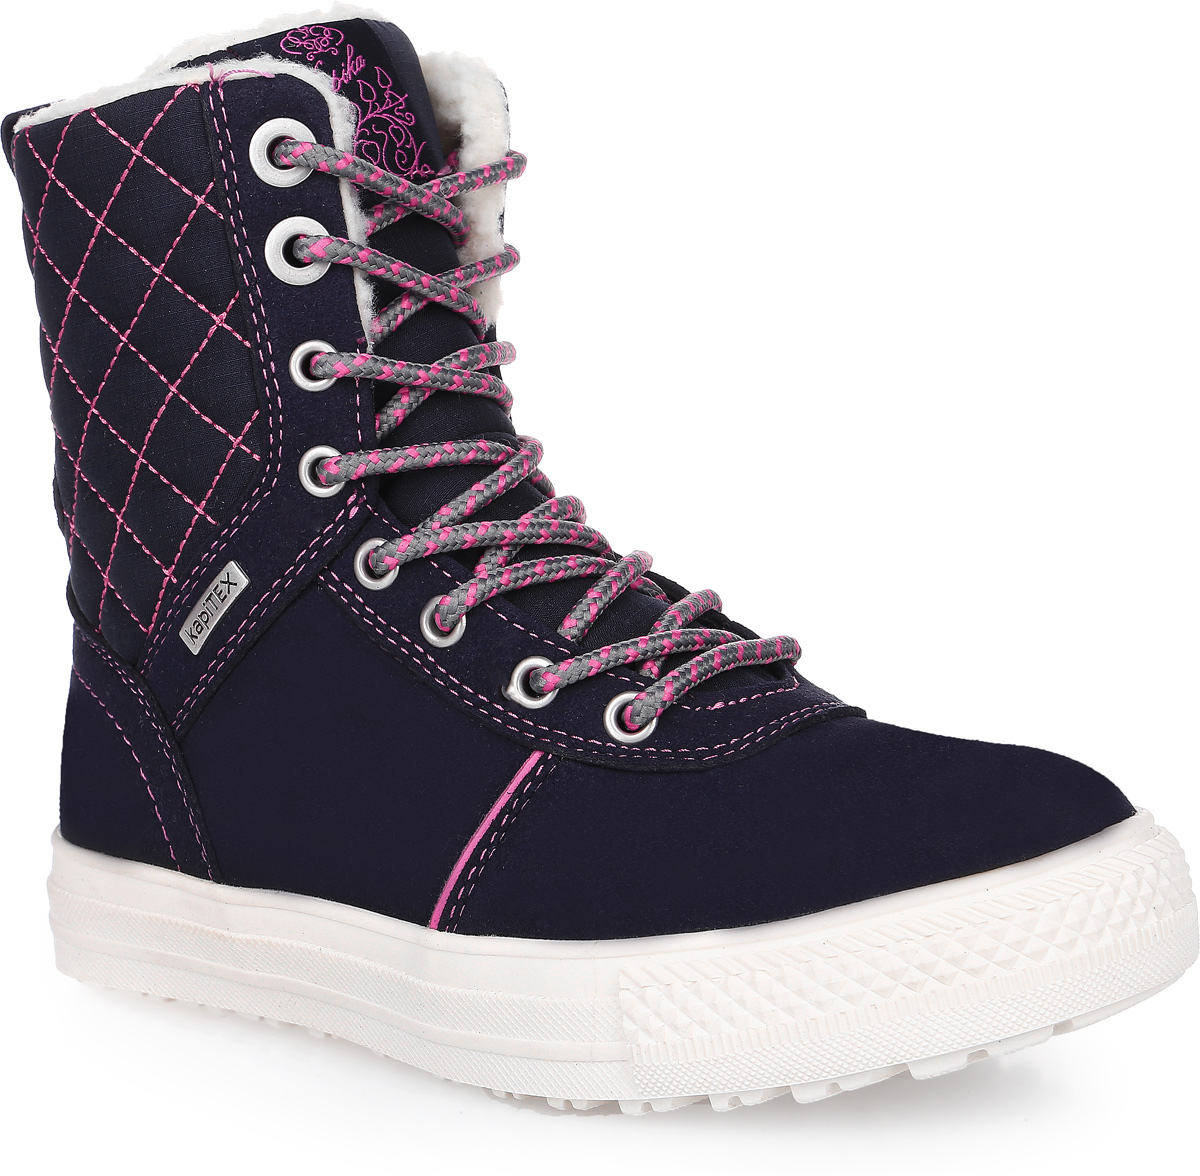 Ботинки для девочки Kapika, цвет: темно-синий, розовый. 43190-2. Размер 33